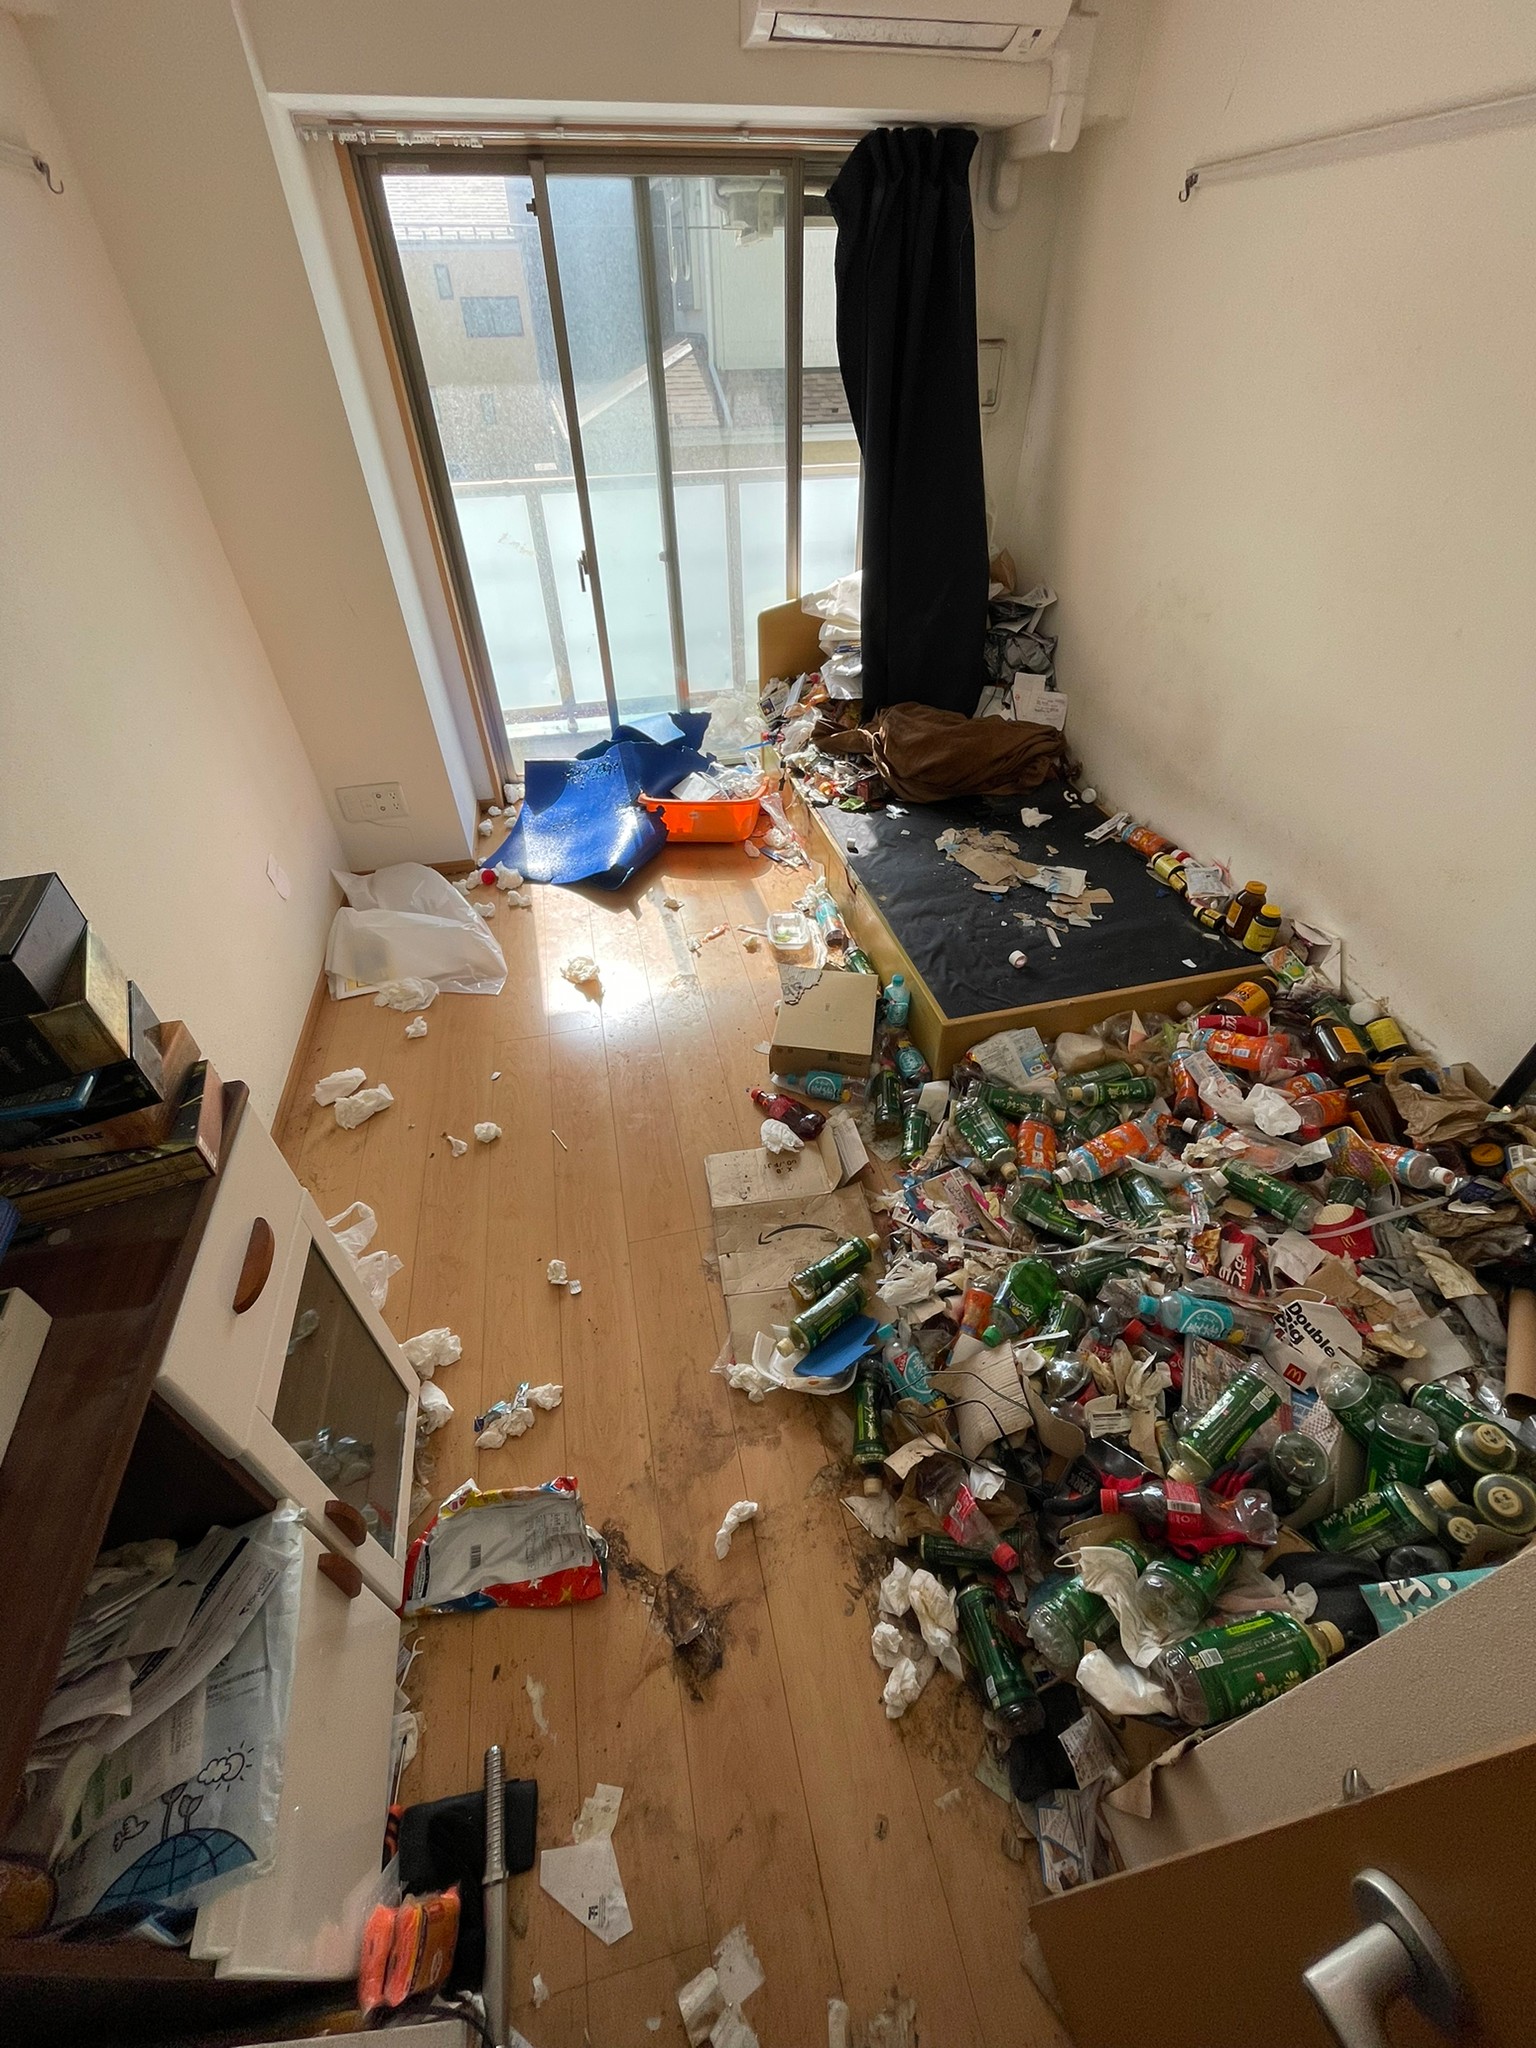 棚、本、ベッド、金属類、ペットボトルなど家庭ゴミ1部屋分の回収前の状態